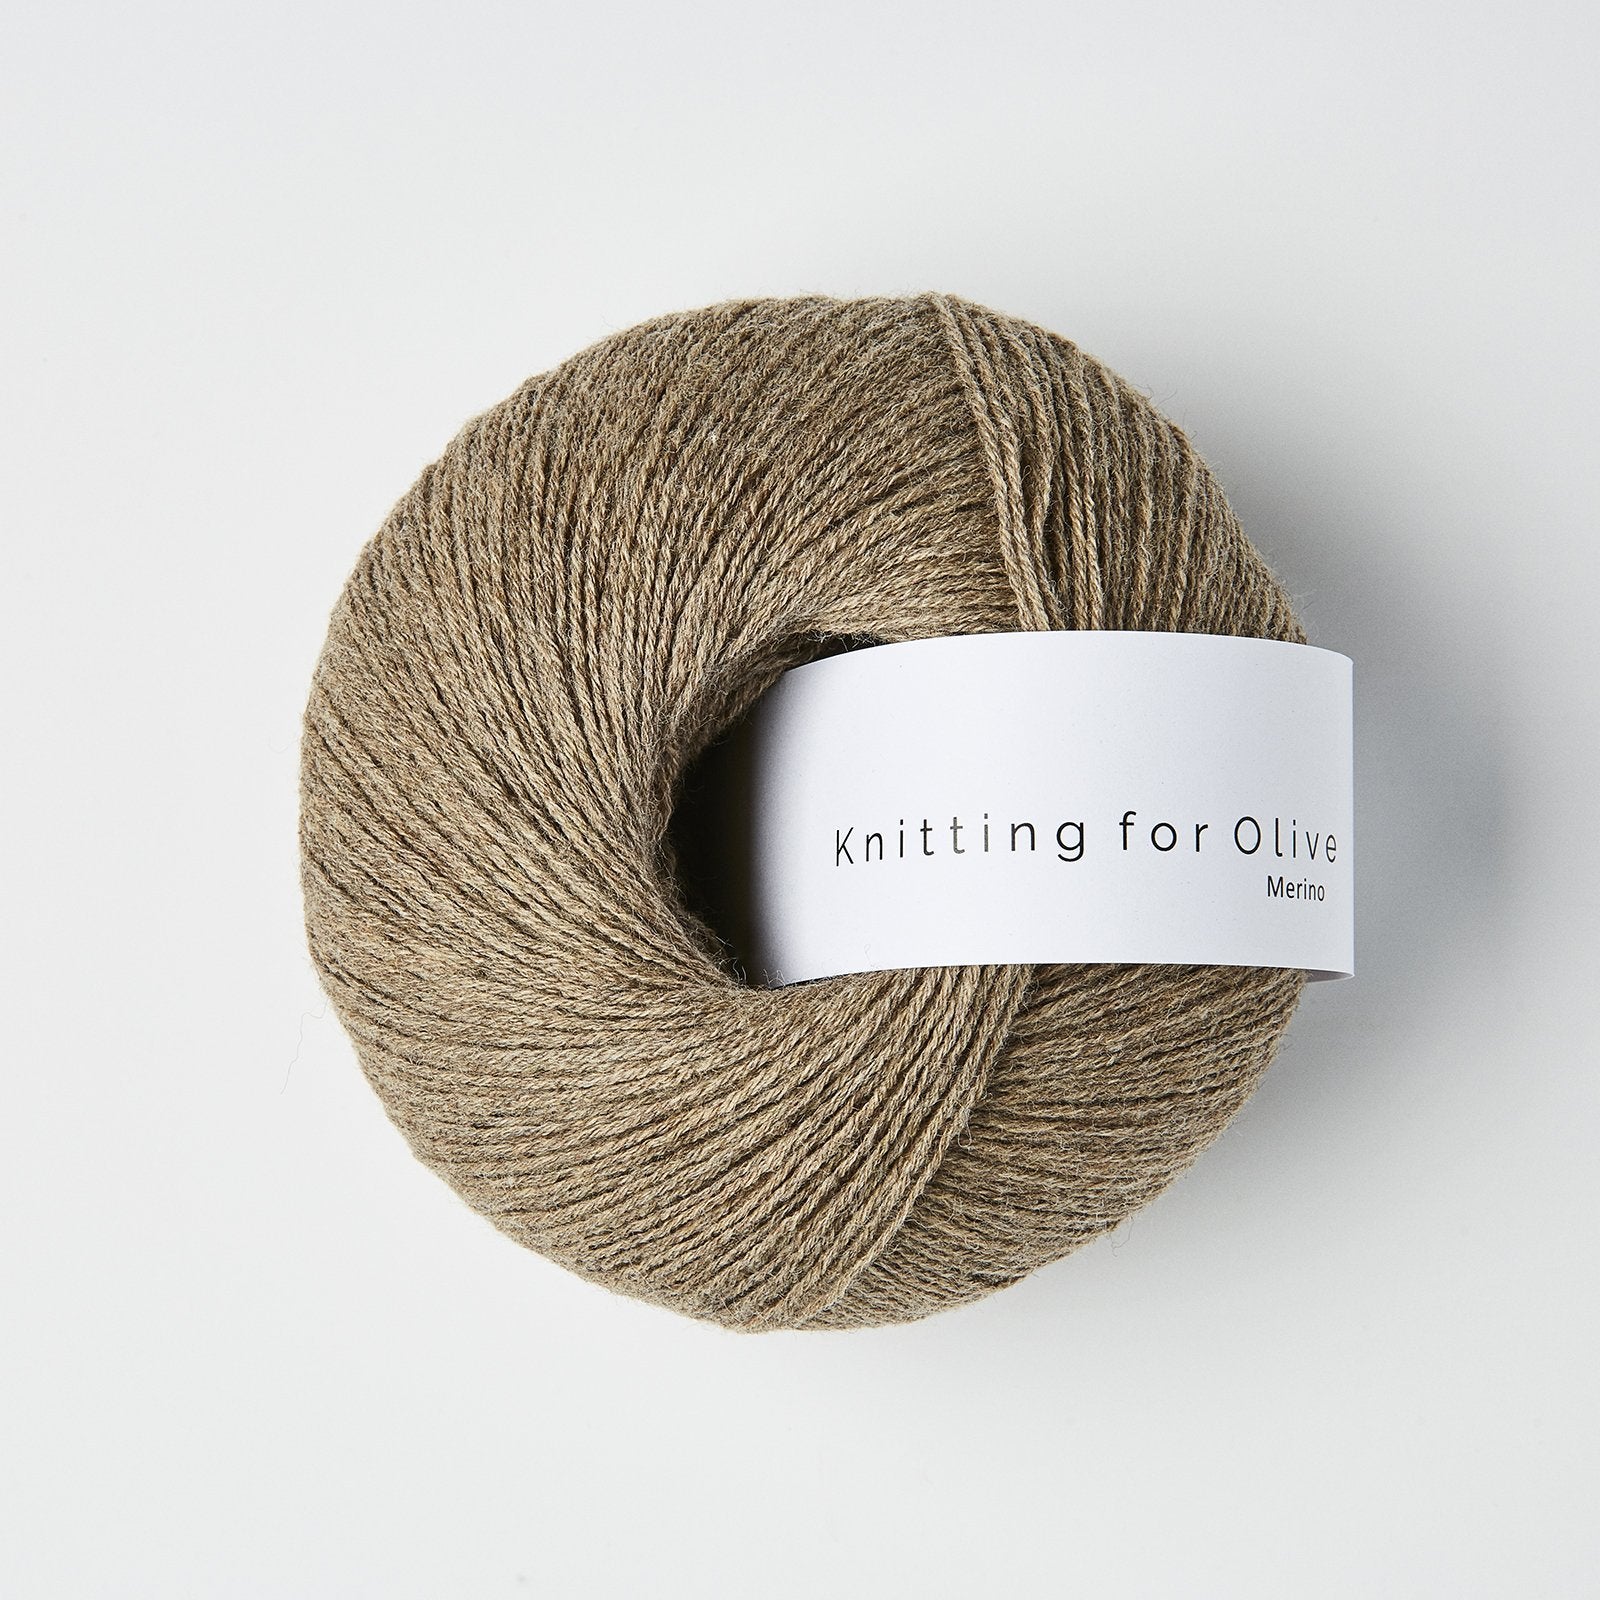 Knitting for Olive Merino Natur